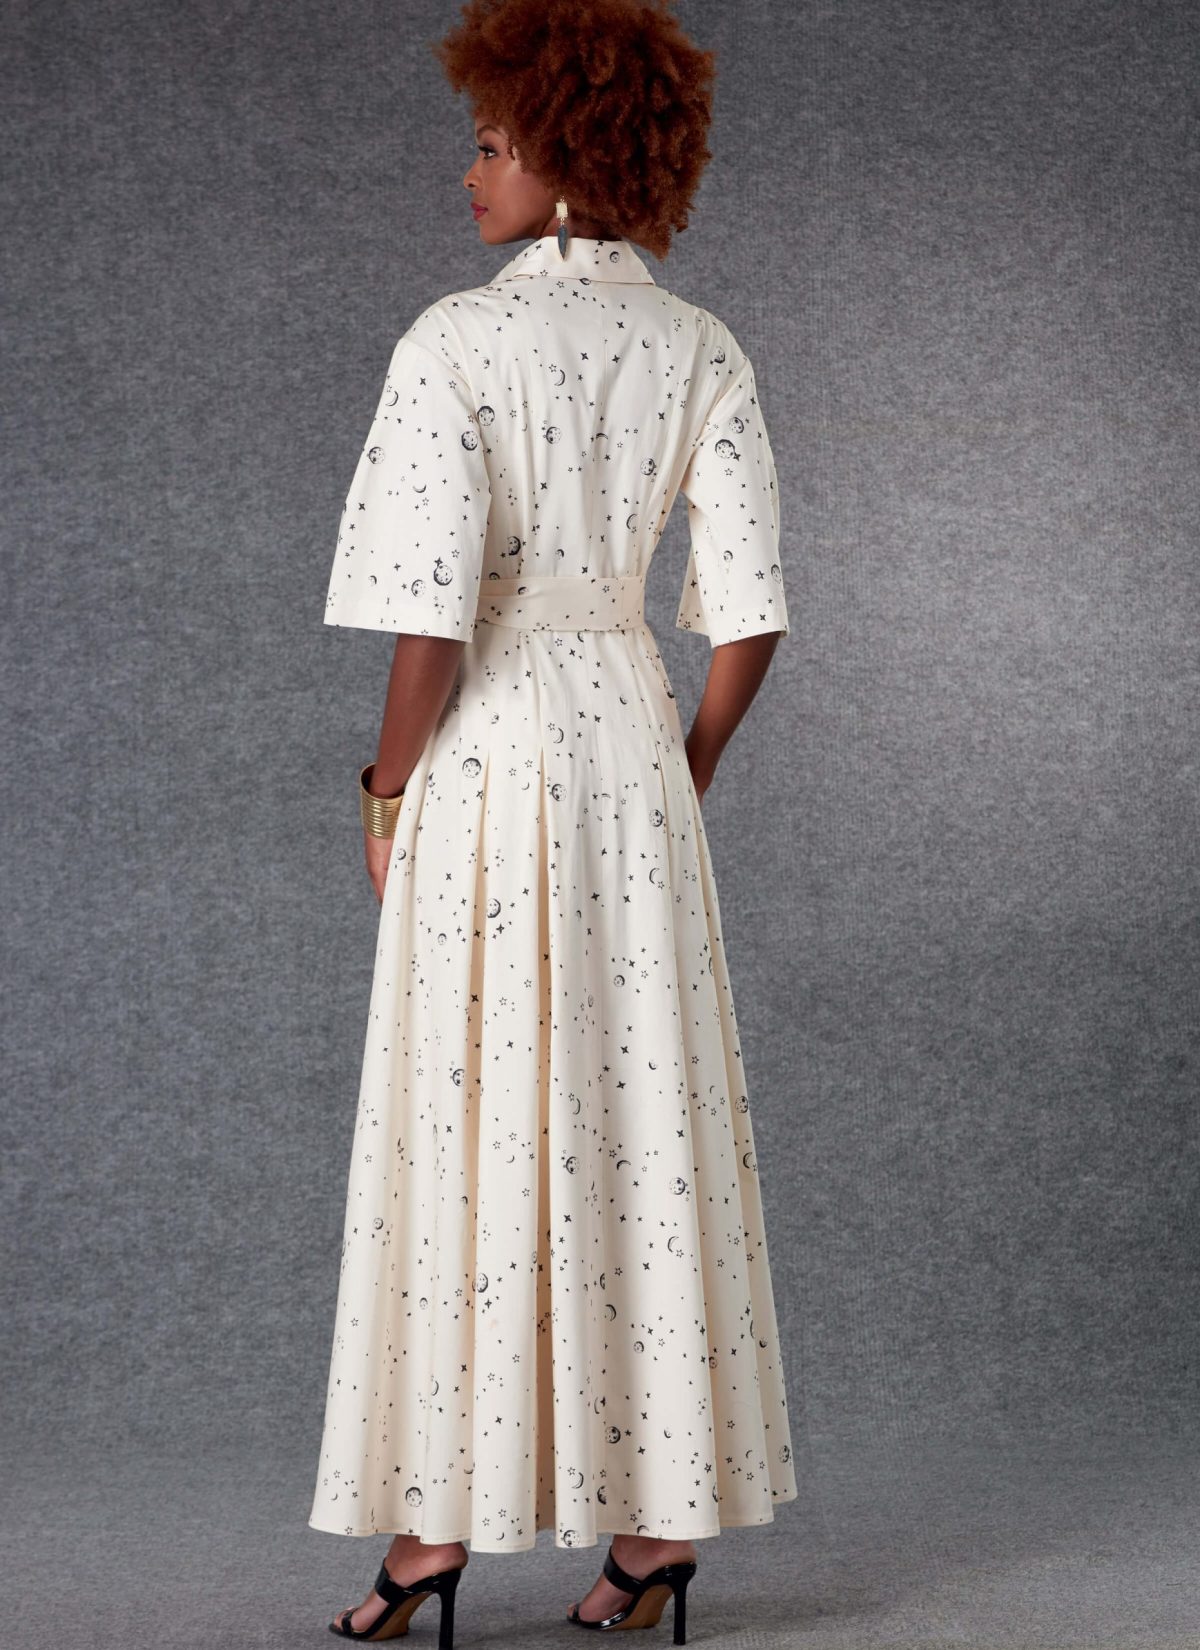 Vogue Patterns V1783 Misses' Dresses